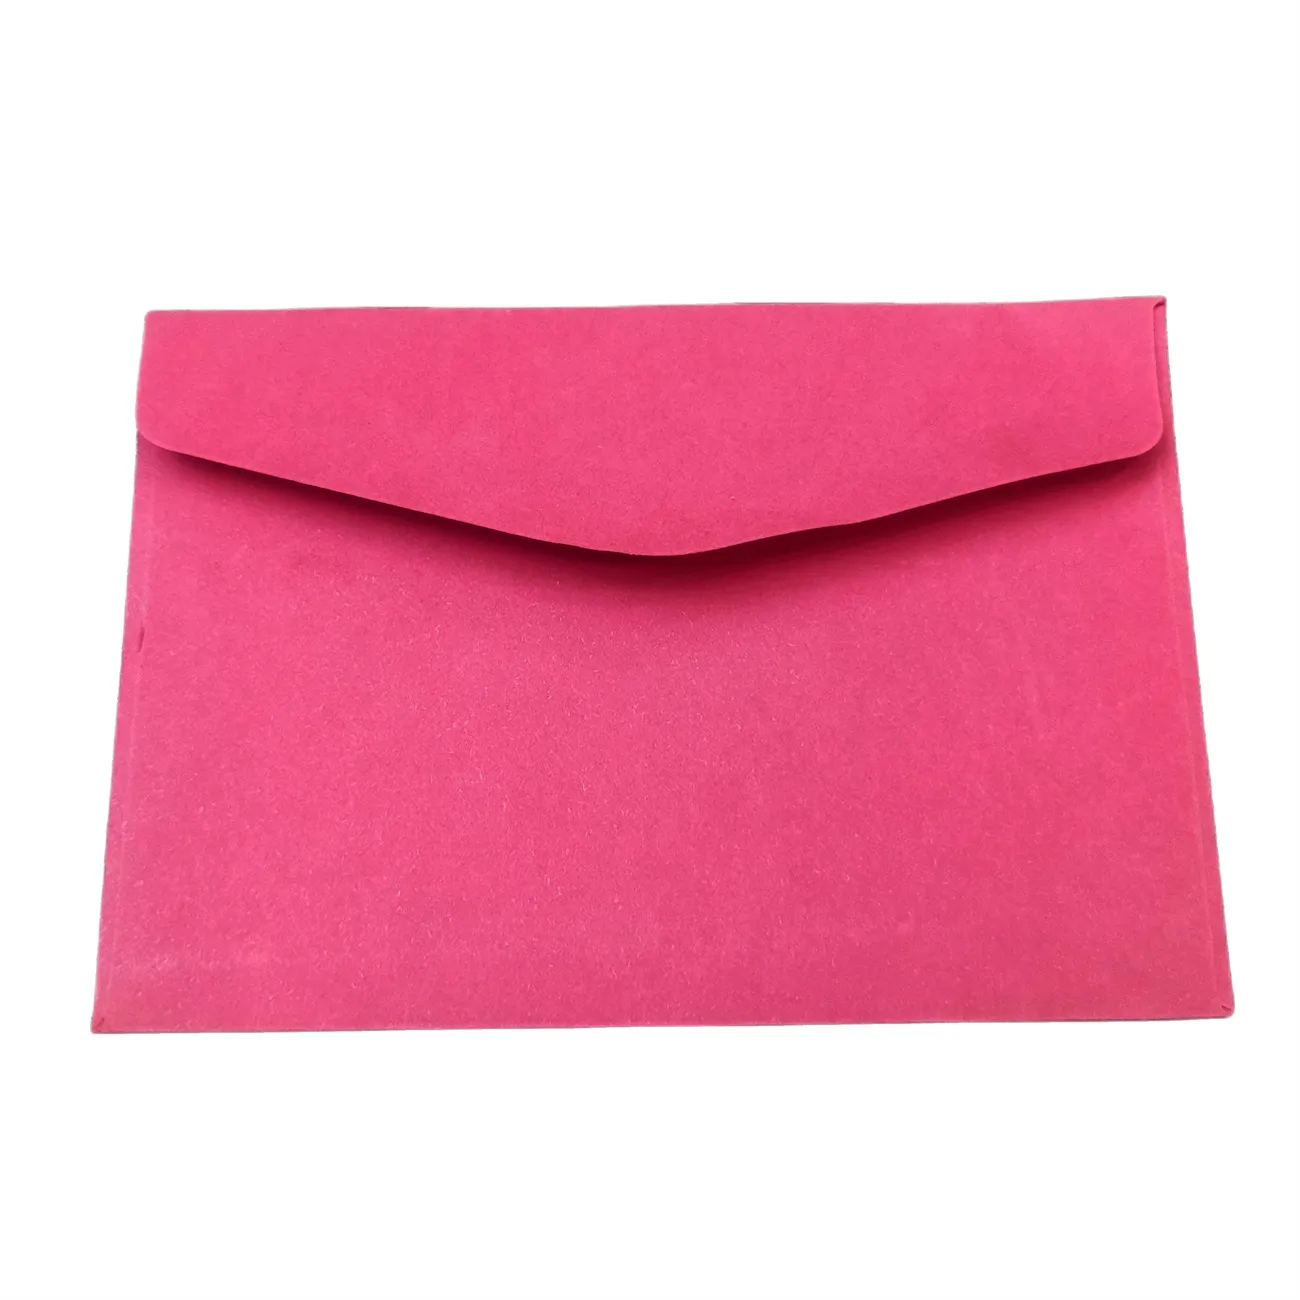 Wedding card invitation with sleeve invoice cash envelope padded envelopes blue biodegradable A4 DL C5 paper cardboard envelope